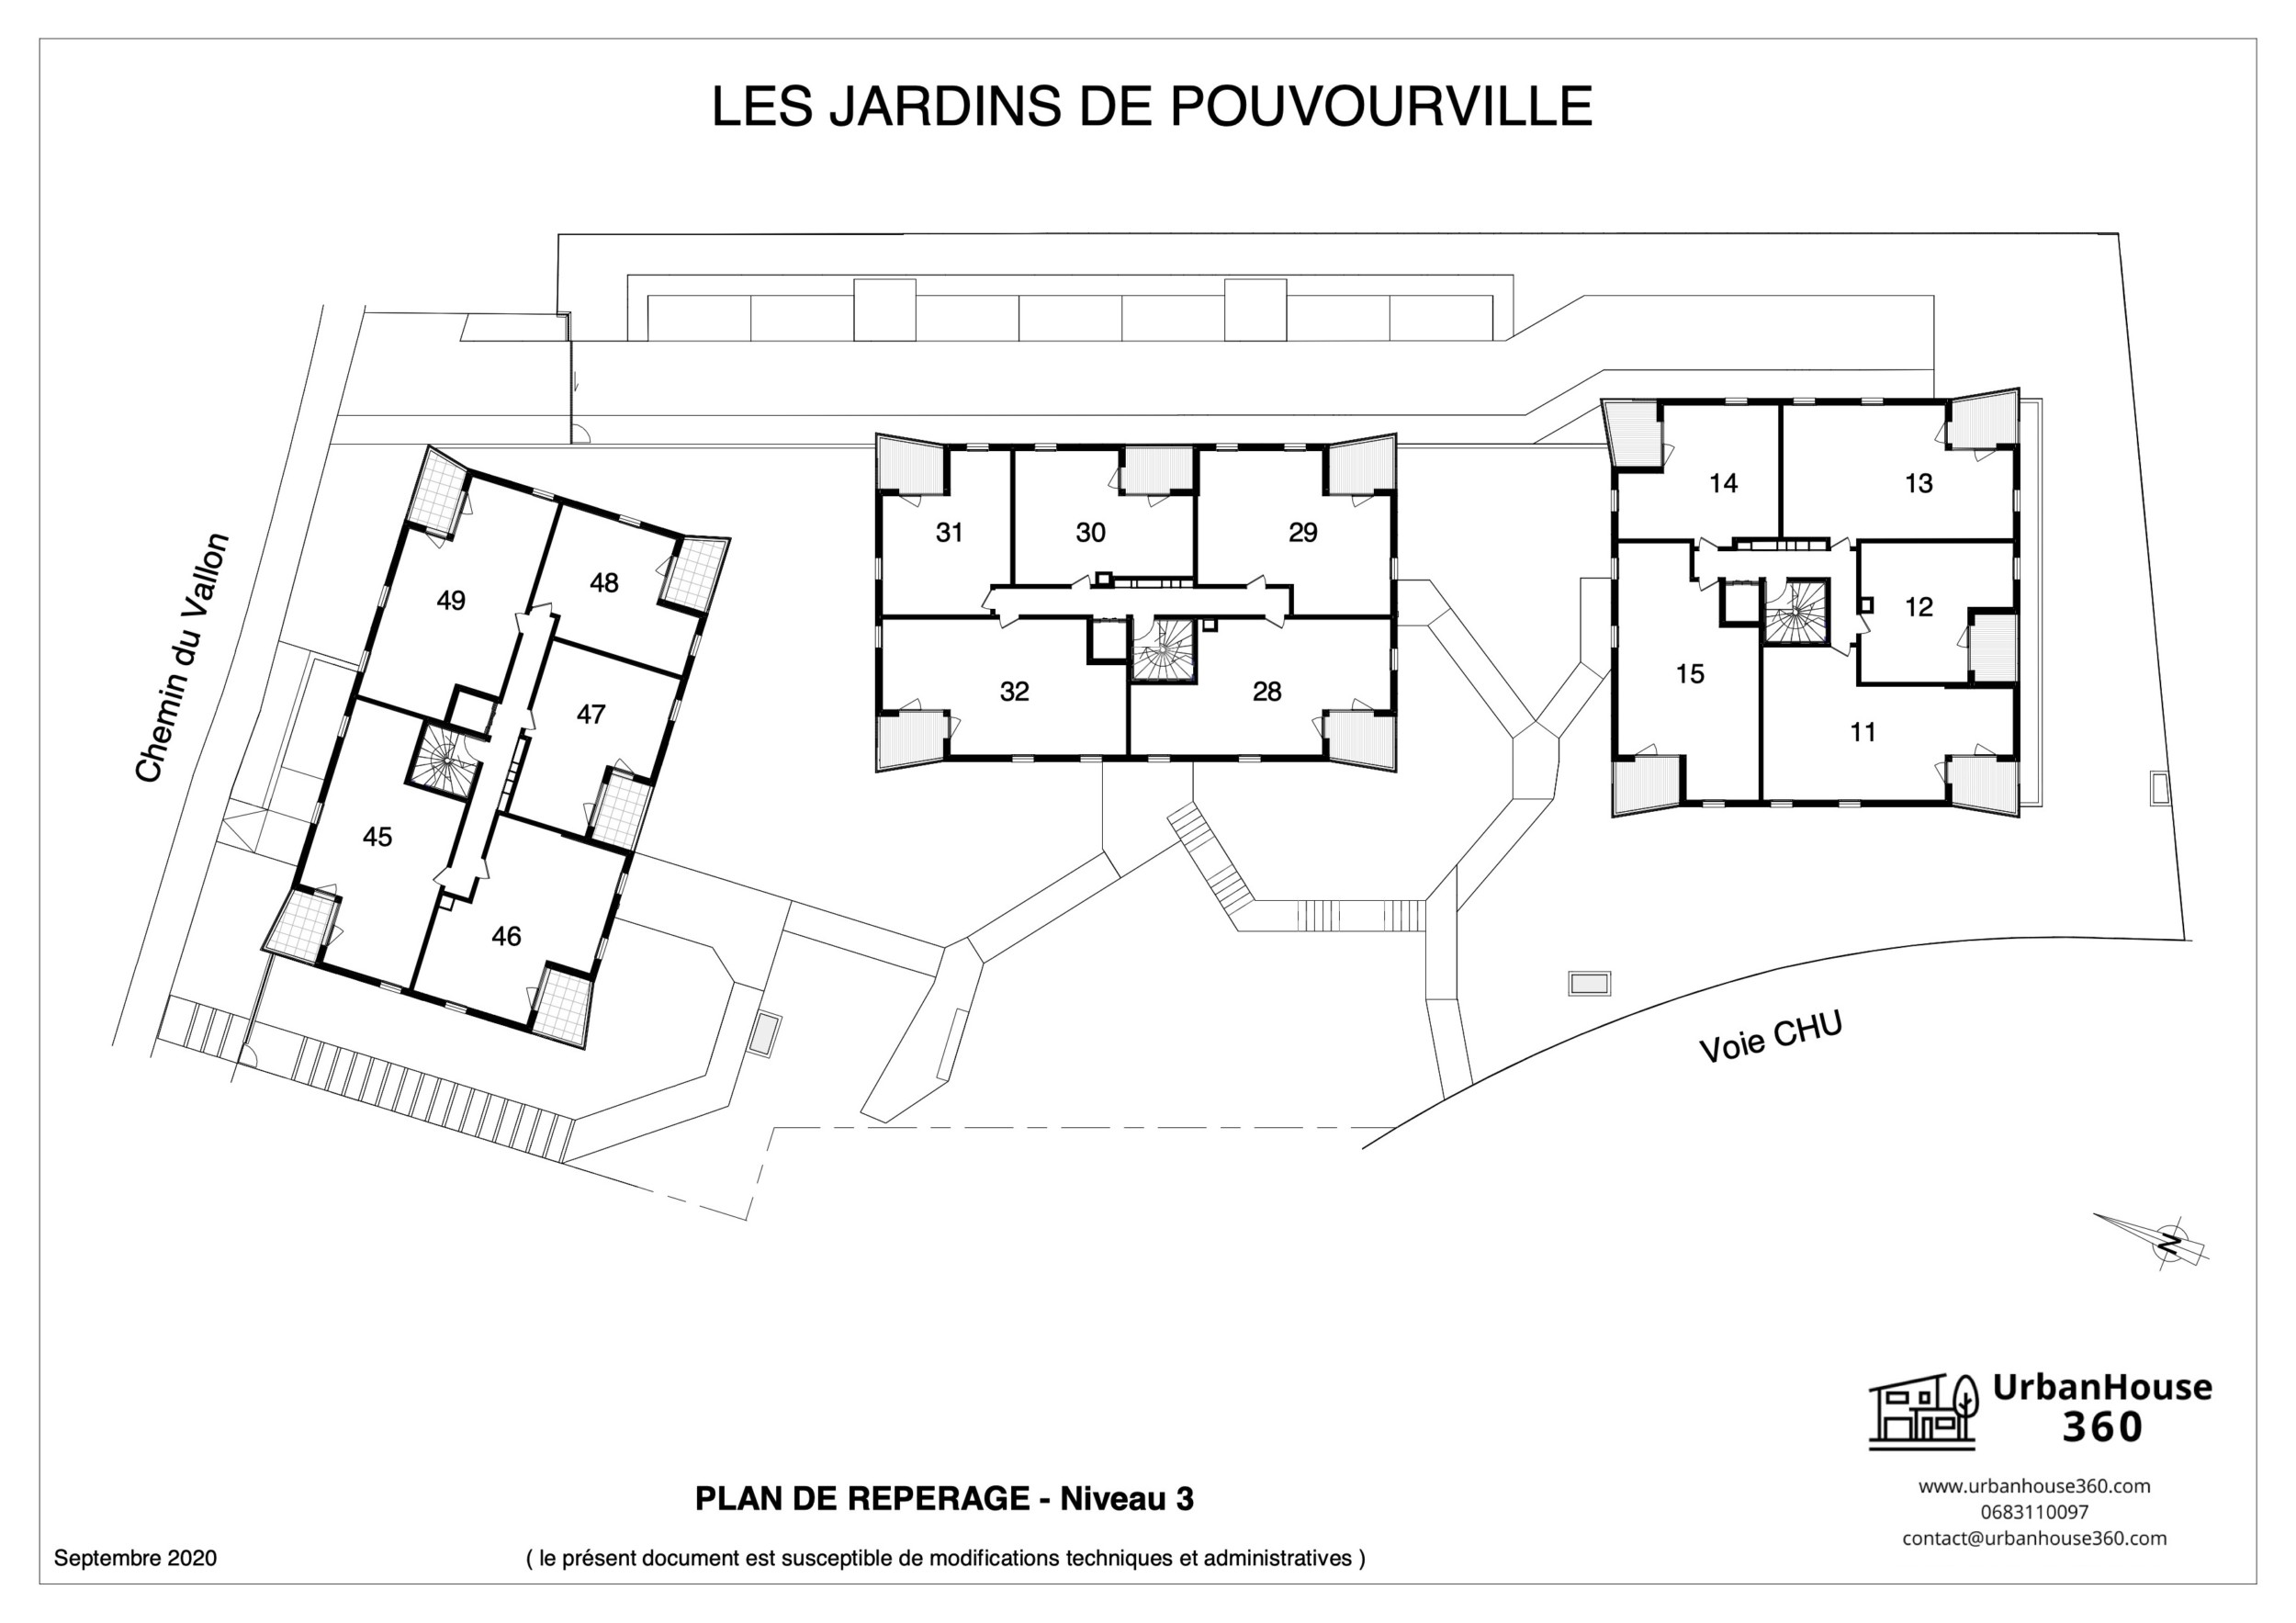 UrbanHouse360-plans_de_reperage-les_jardins_de_pouvourville 4